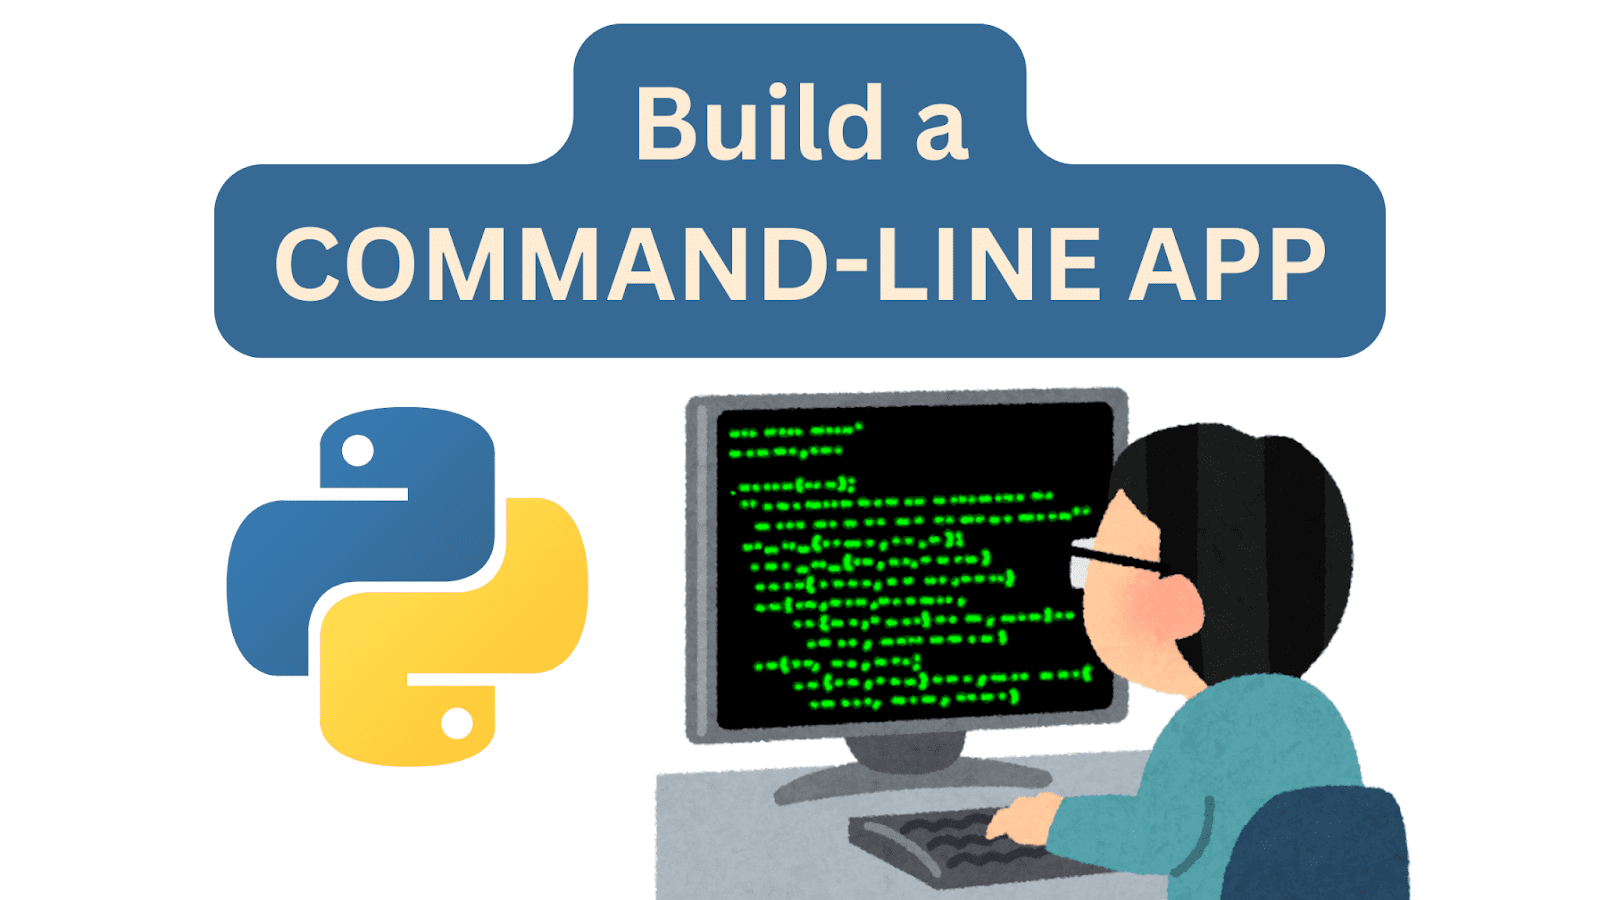 Crie um aplicativo de linha de comando com Python em 7 etapas fáceis - KDnuggets